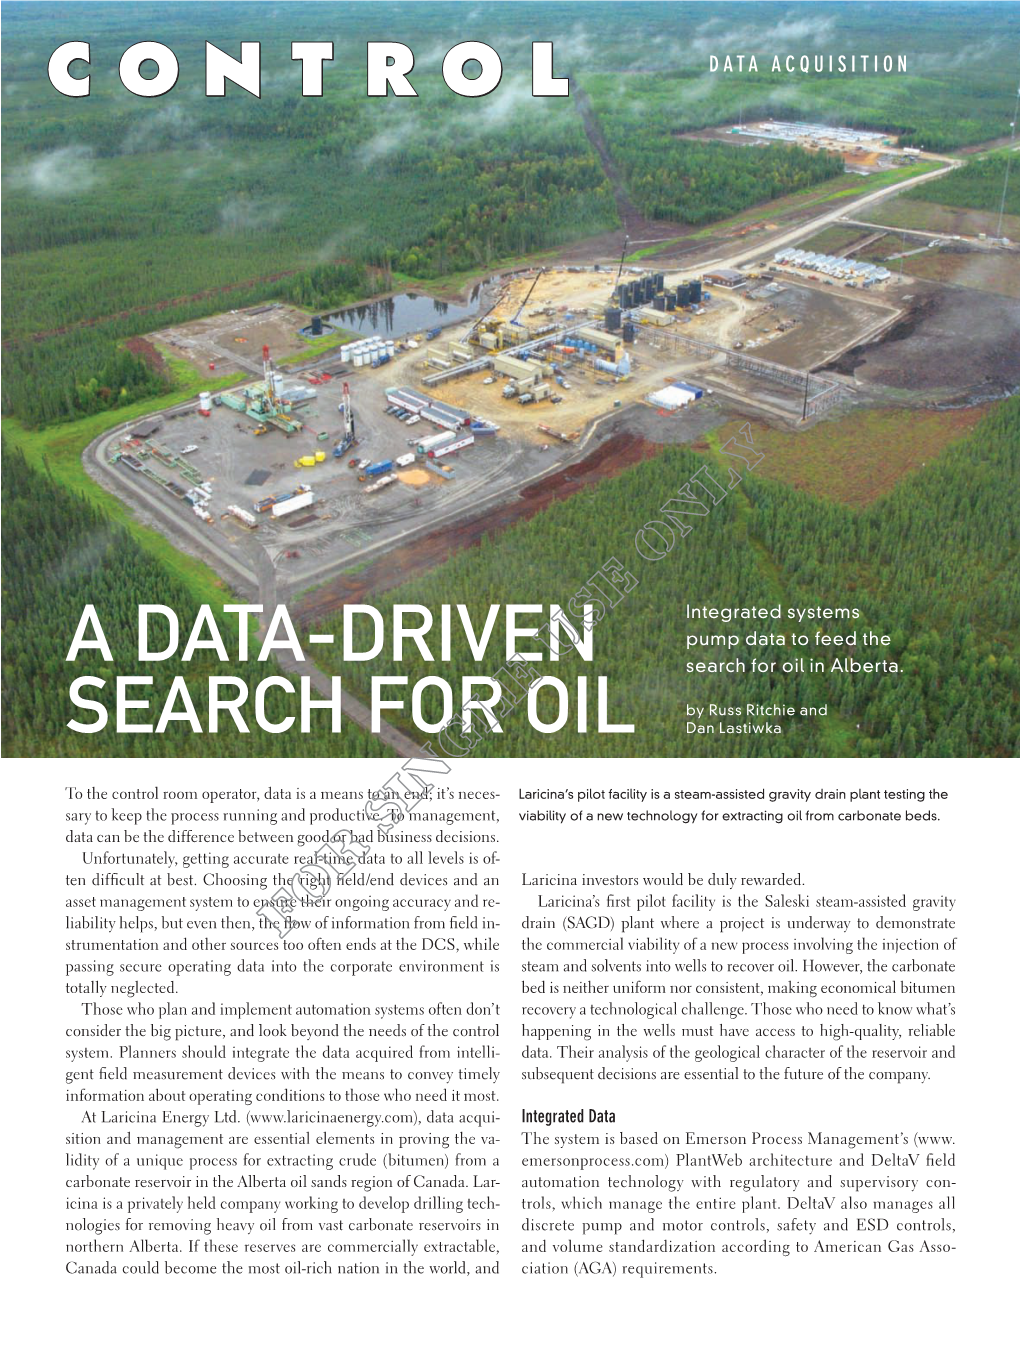 A Data-Driven Search for Oil in Alberta